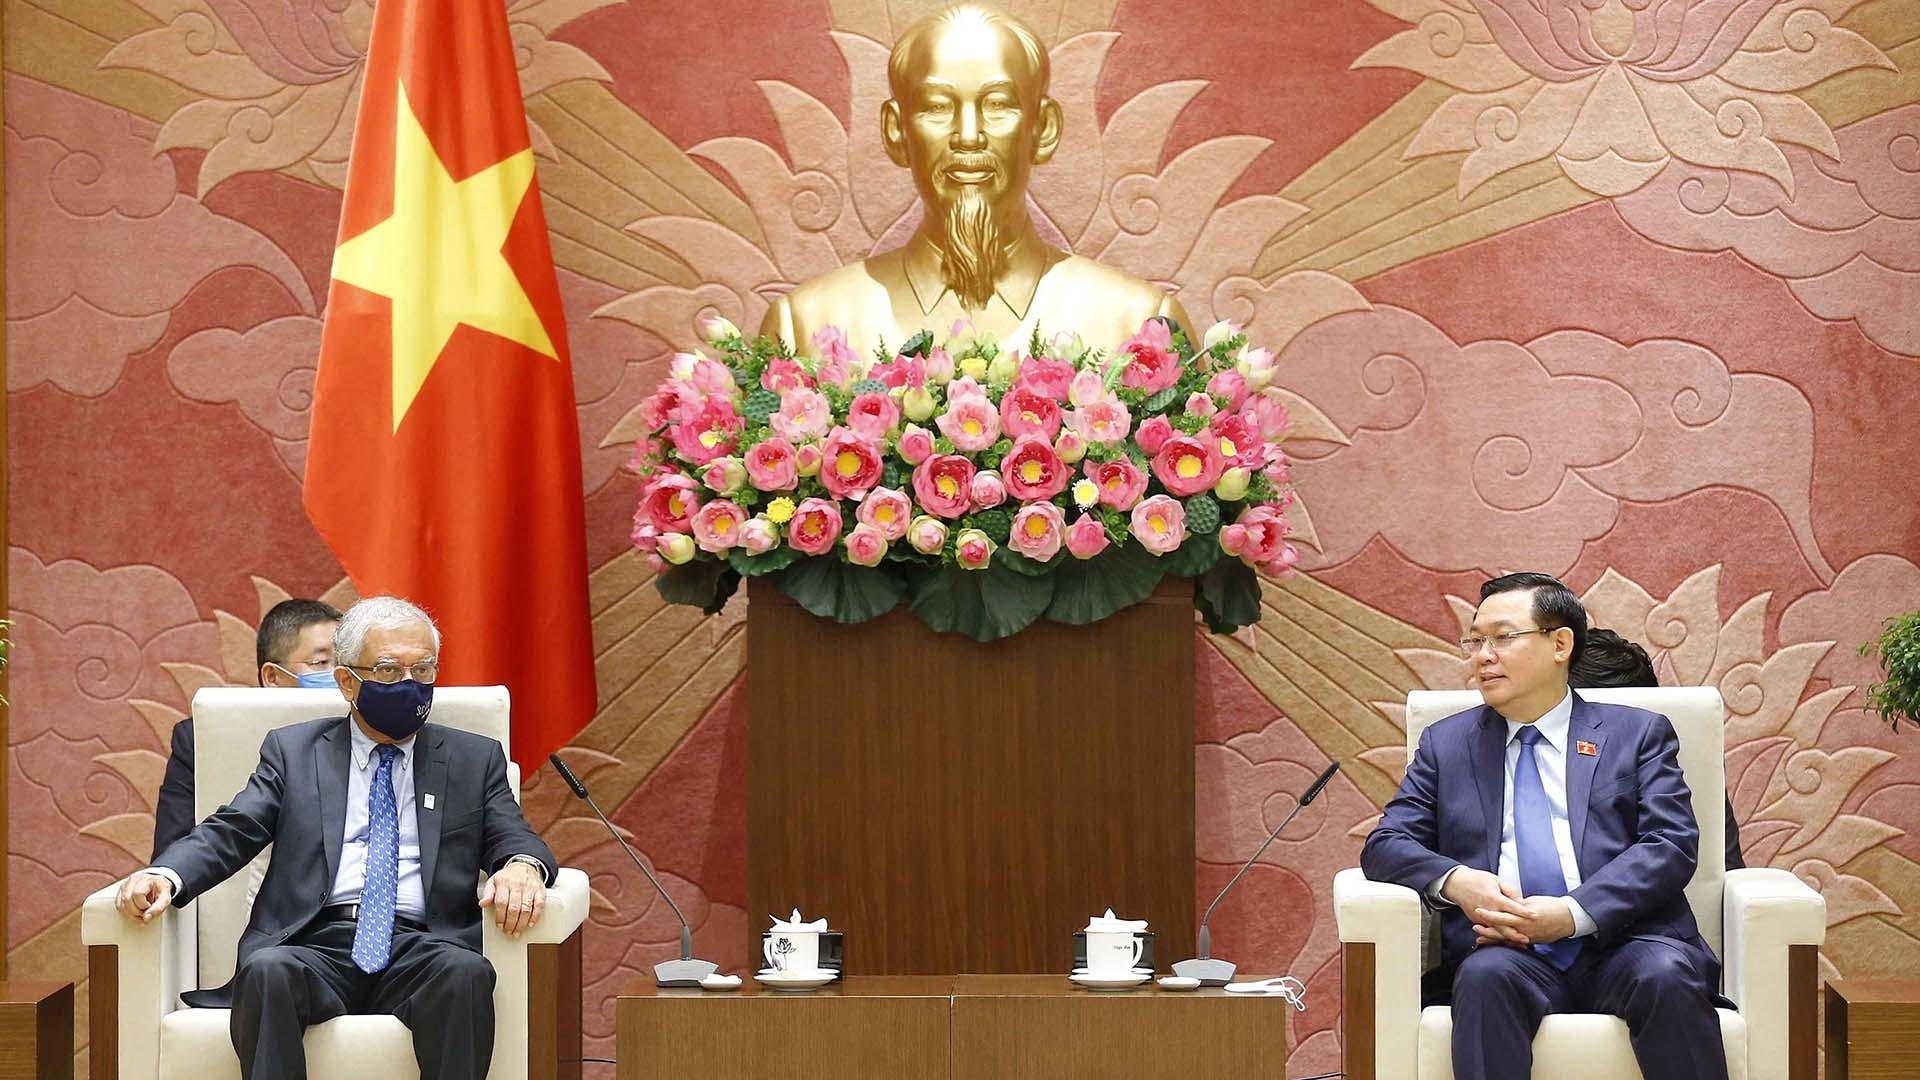 Chủ tịch Quốc hội tiếp Điều phối viên thường trú của Liên hợp quốc tại Việt Nam